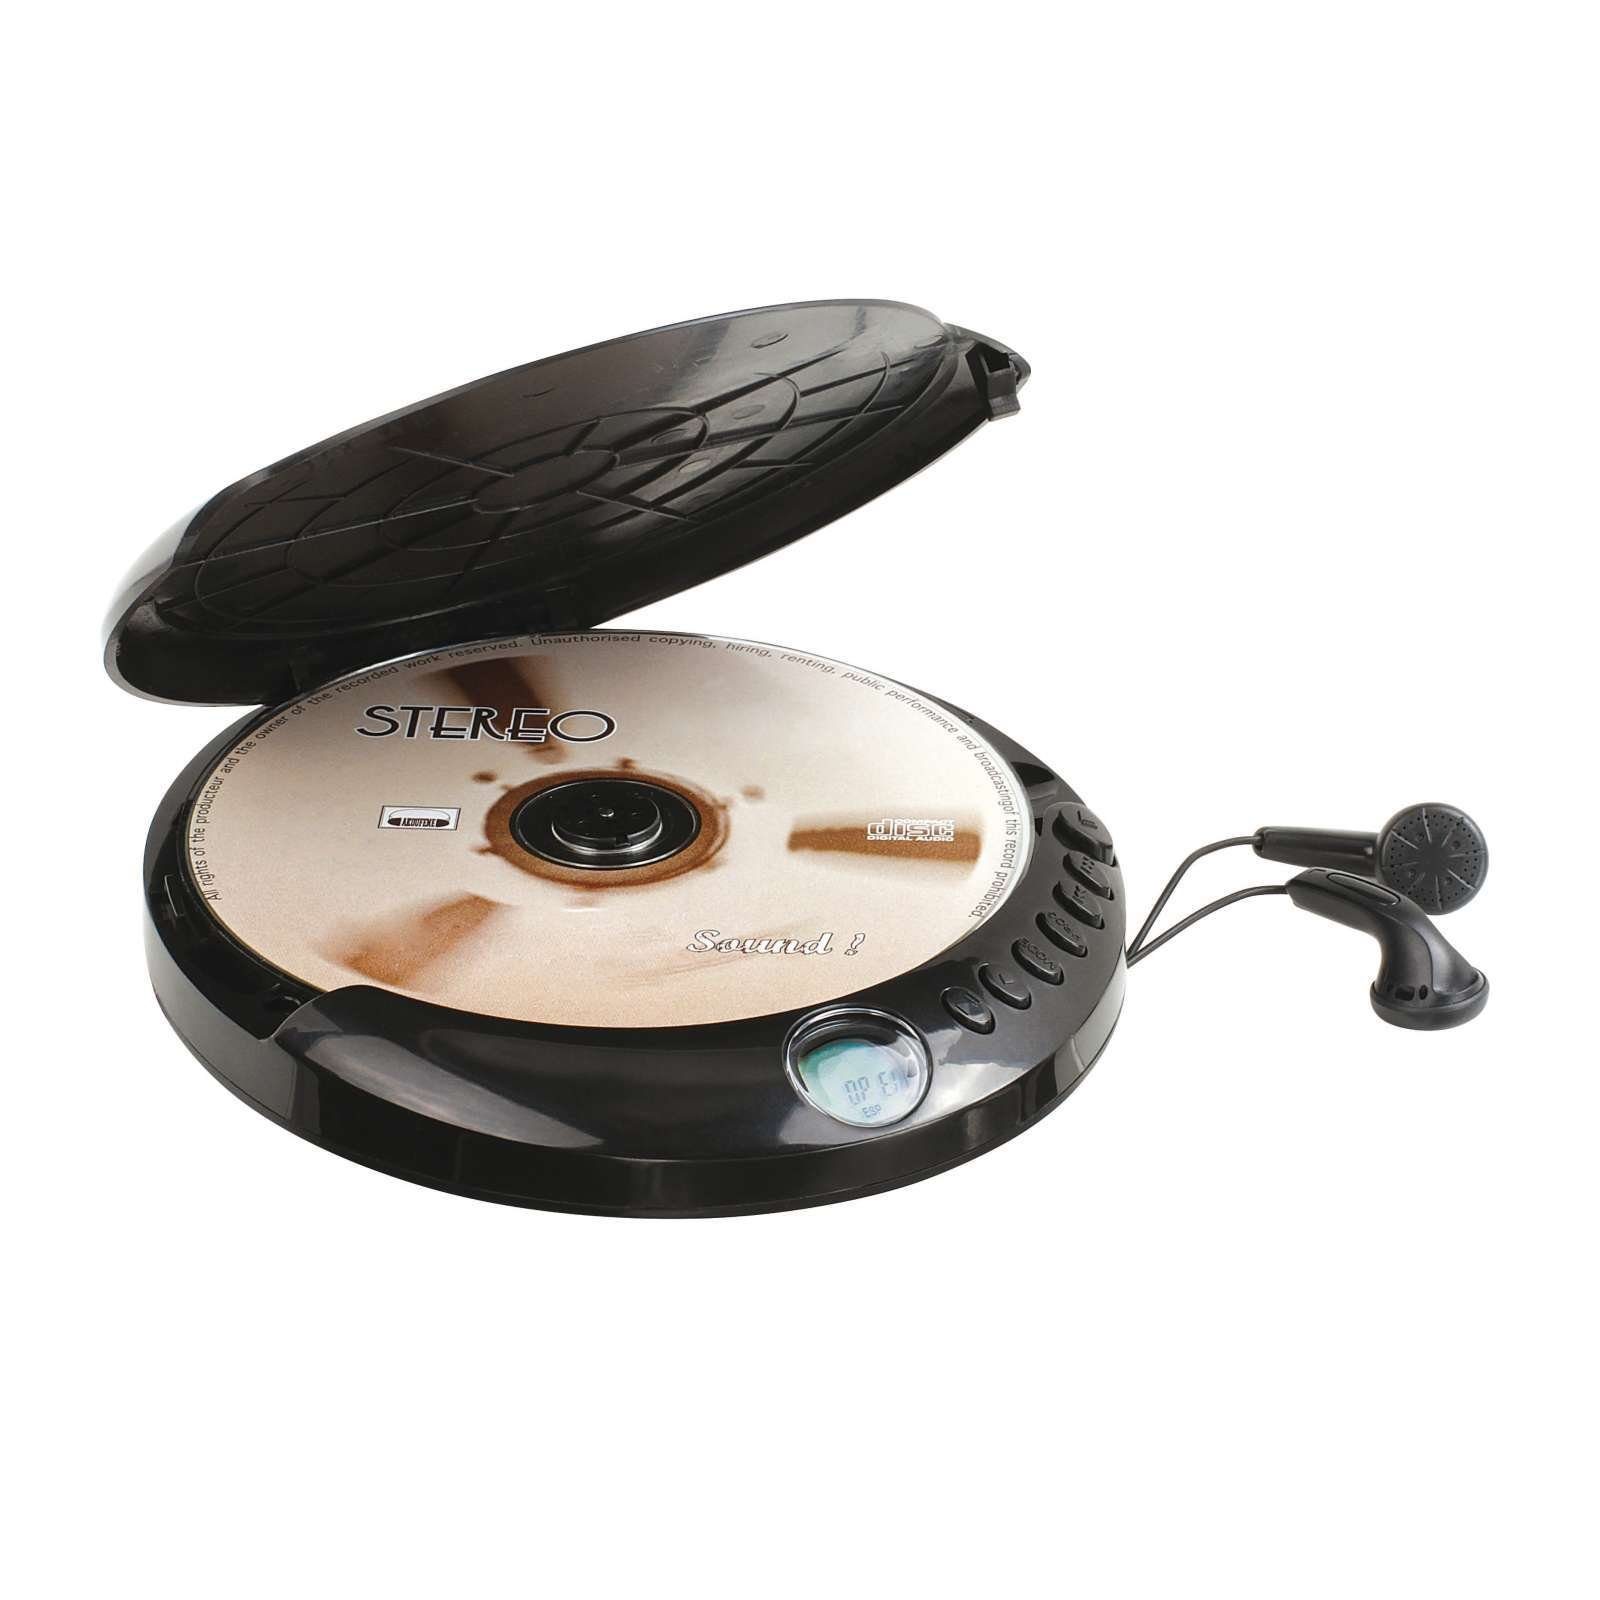 Stereo-CD LIVOO Kopfhörer tragbar CD-Player TES171 CD-RW Player ClipSonic CD-R LCD-Display